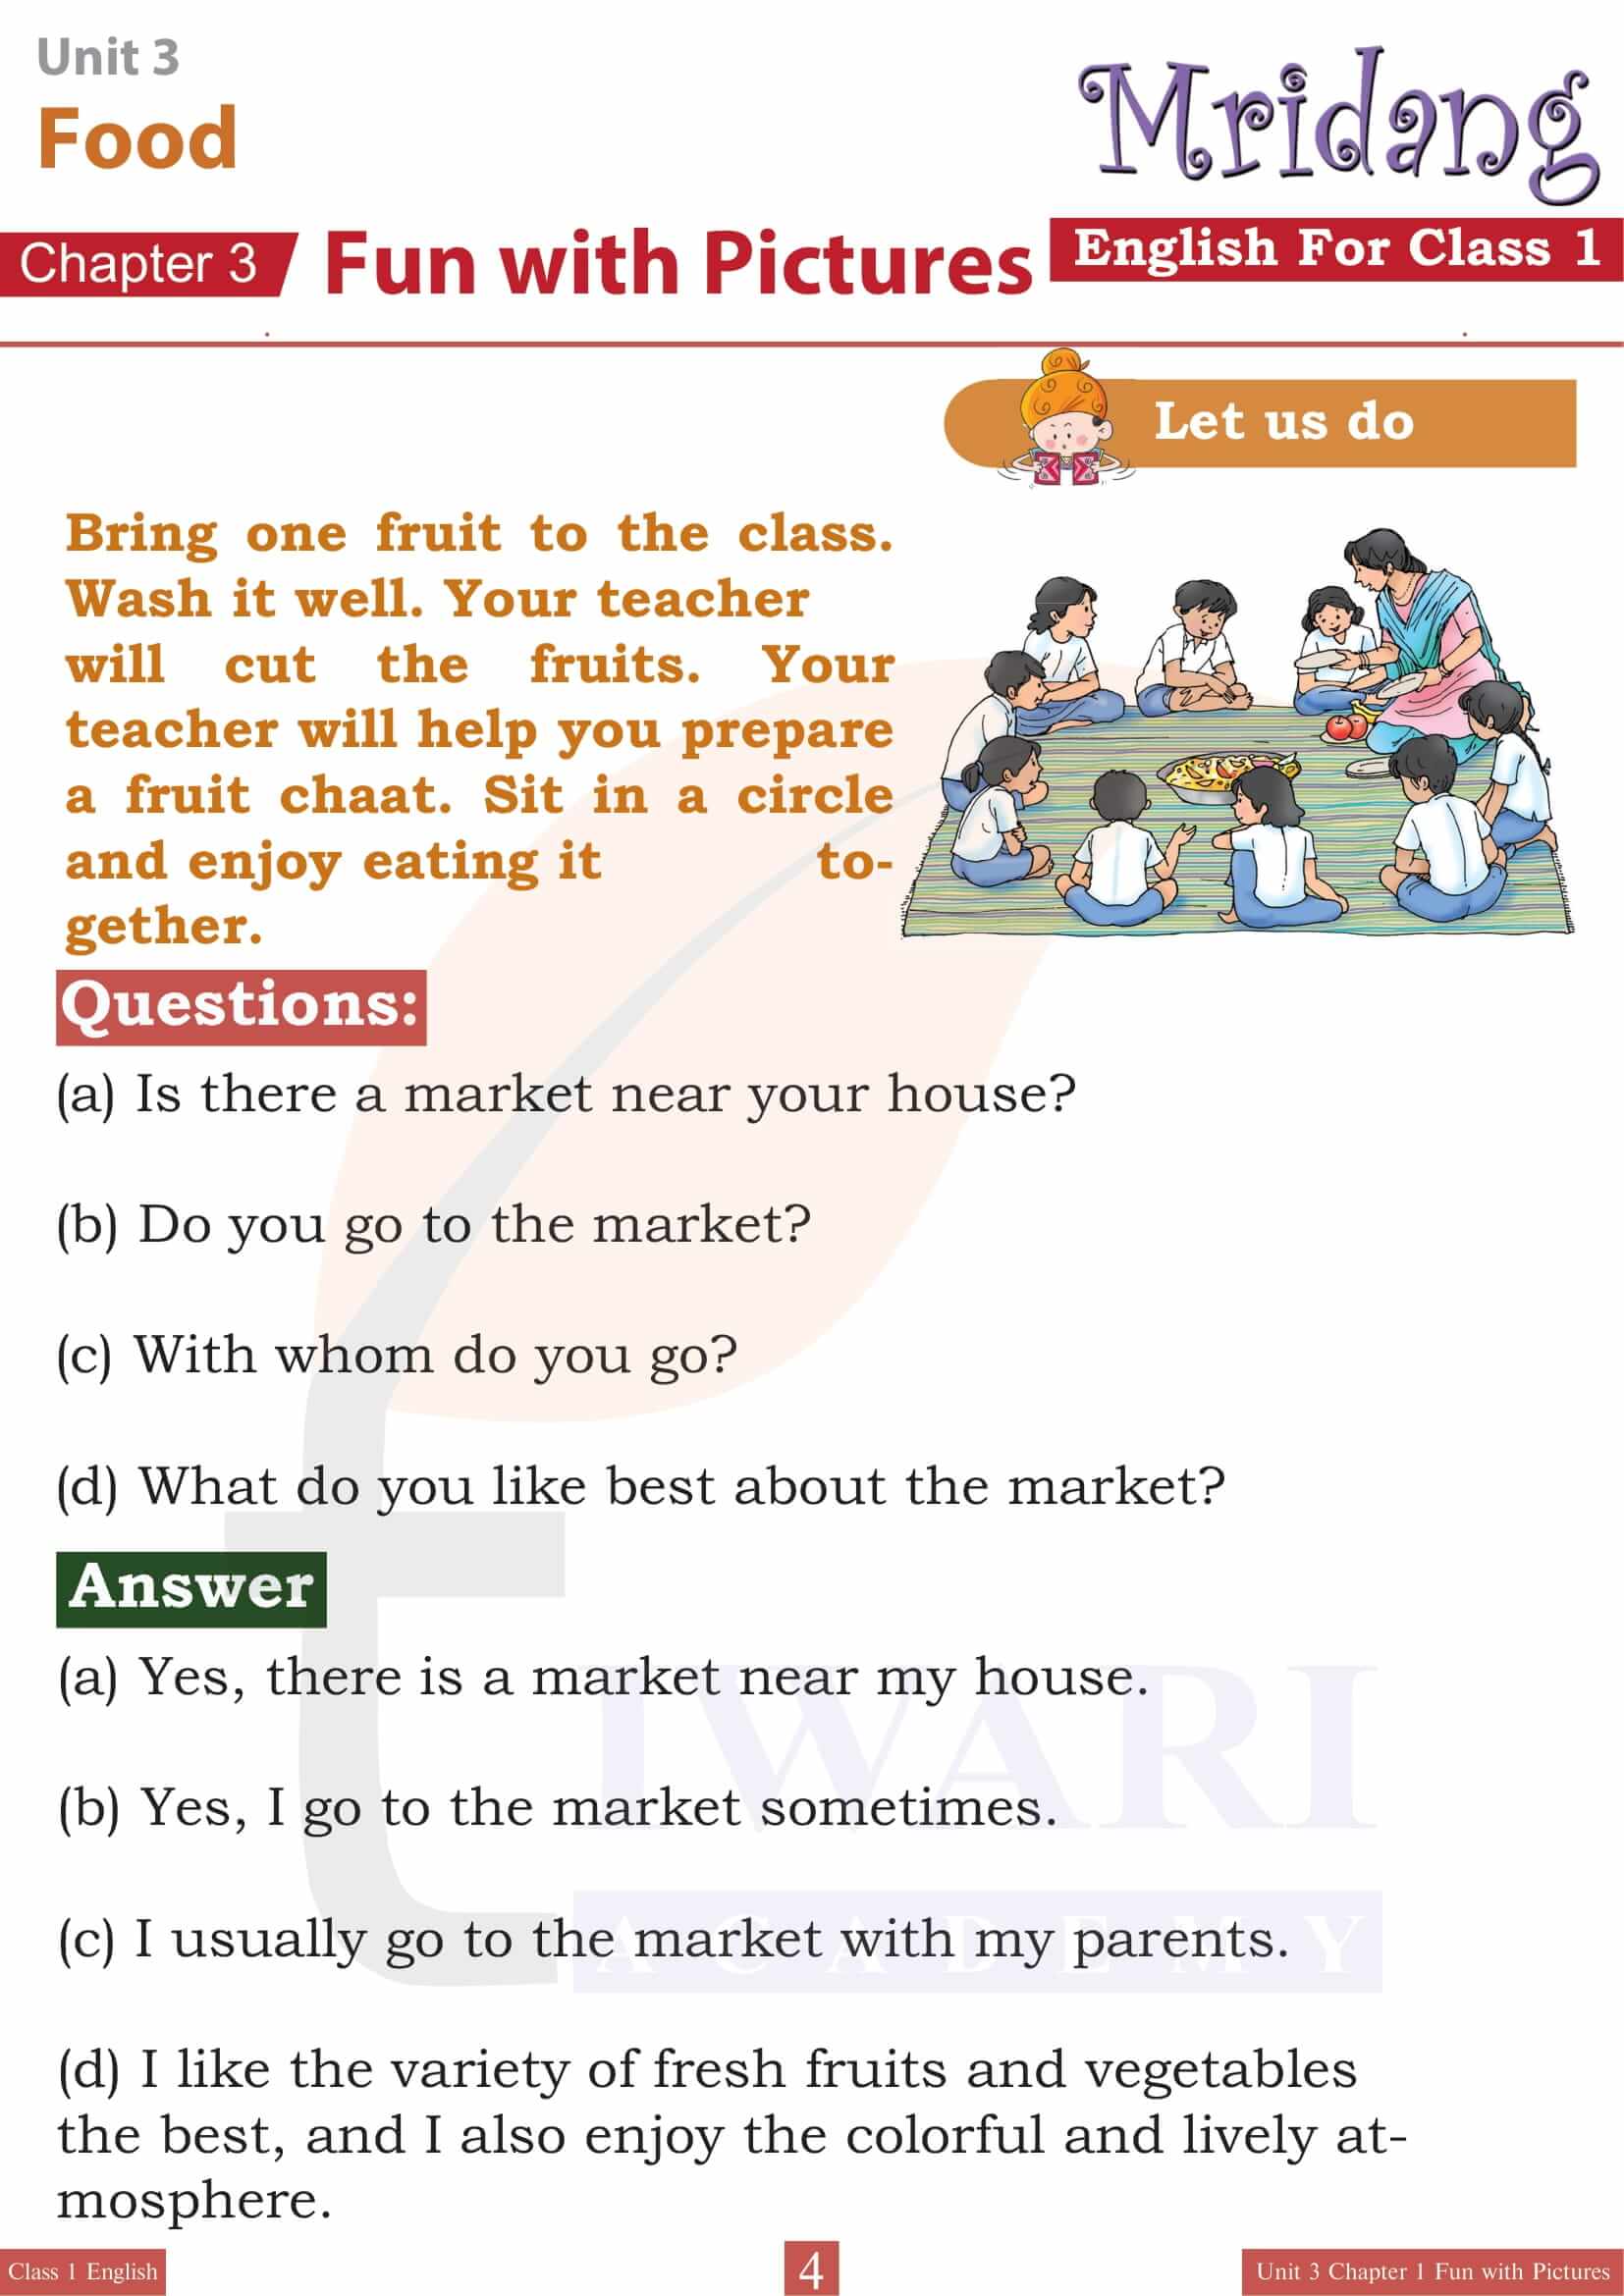 Class 1 English Mridang Unit 3 Food Chapter 1